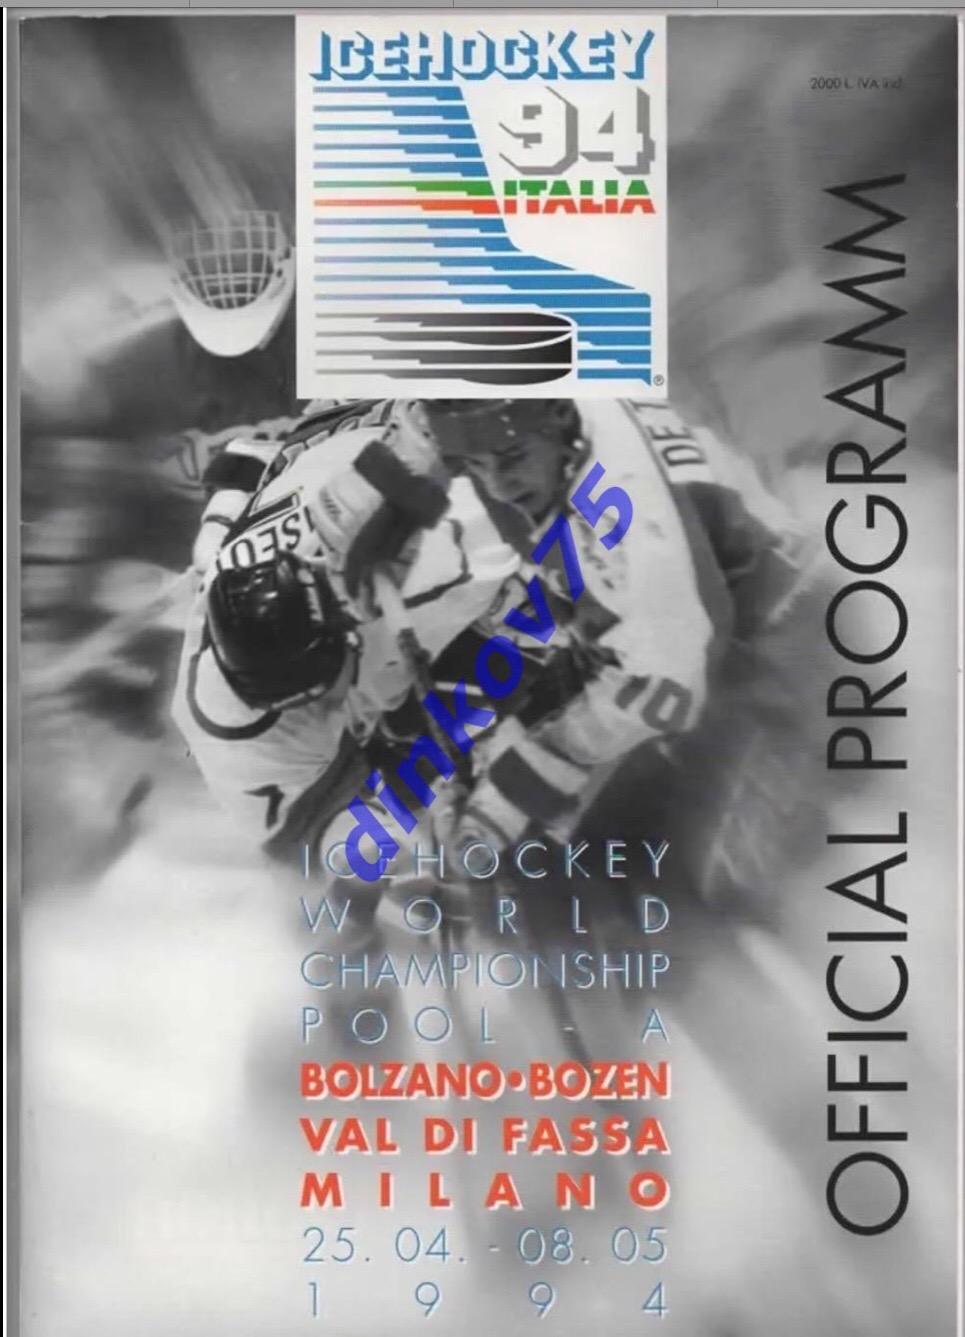 Программа Чемпионат Мира по хоккею 1994 в Италии. С участием Россия